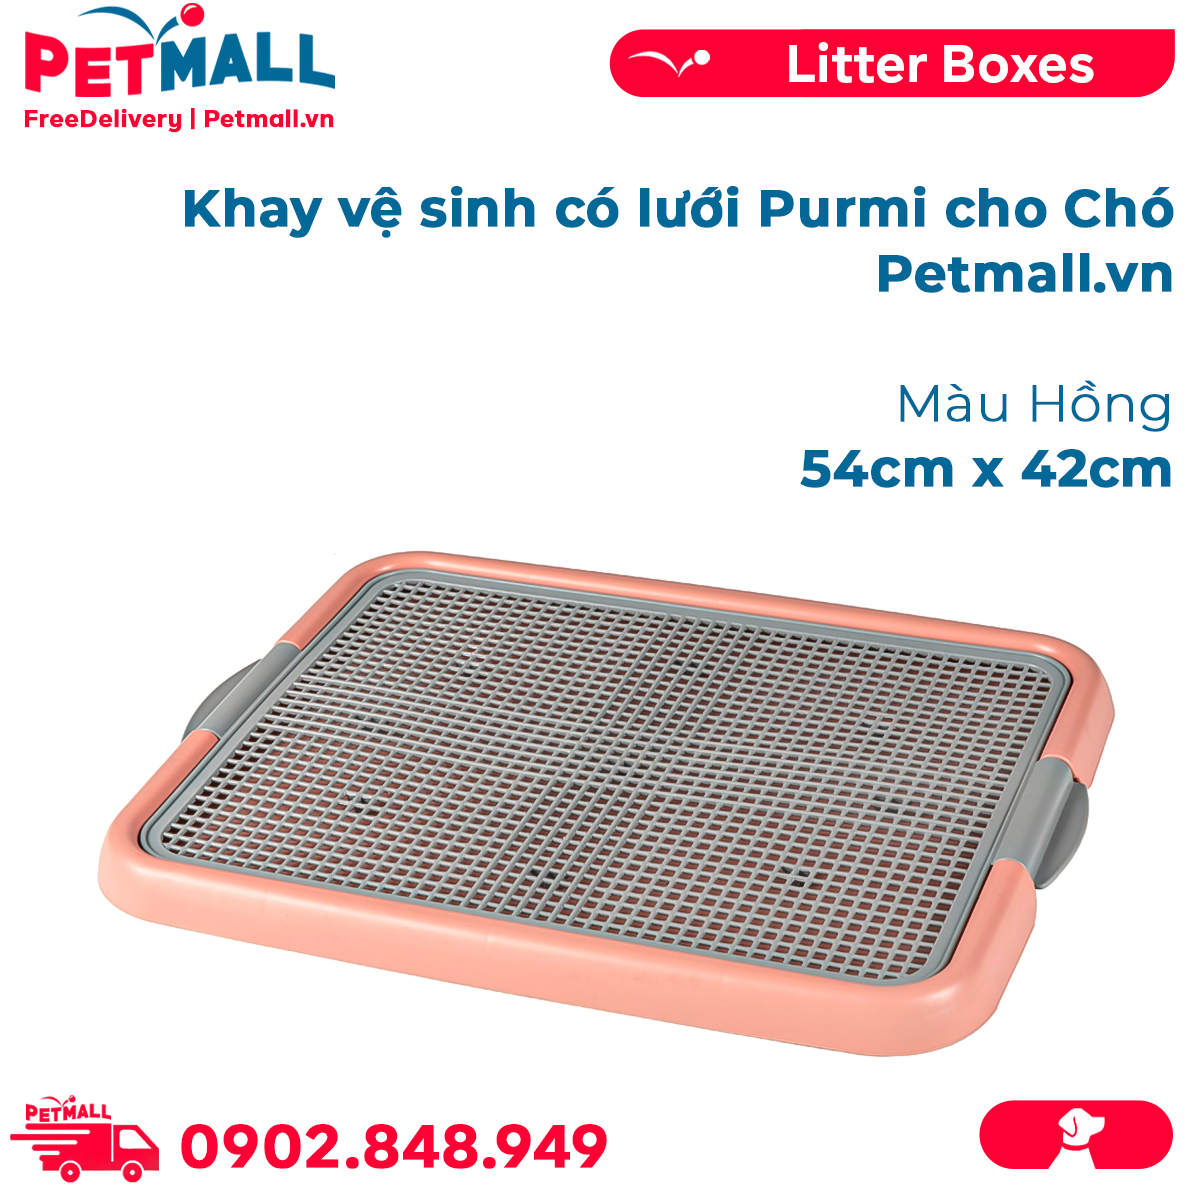 Khay vệ sinh có lưới Purmi cho chó Size 54cm x 42cm - Màu hồng Petmall